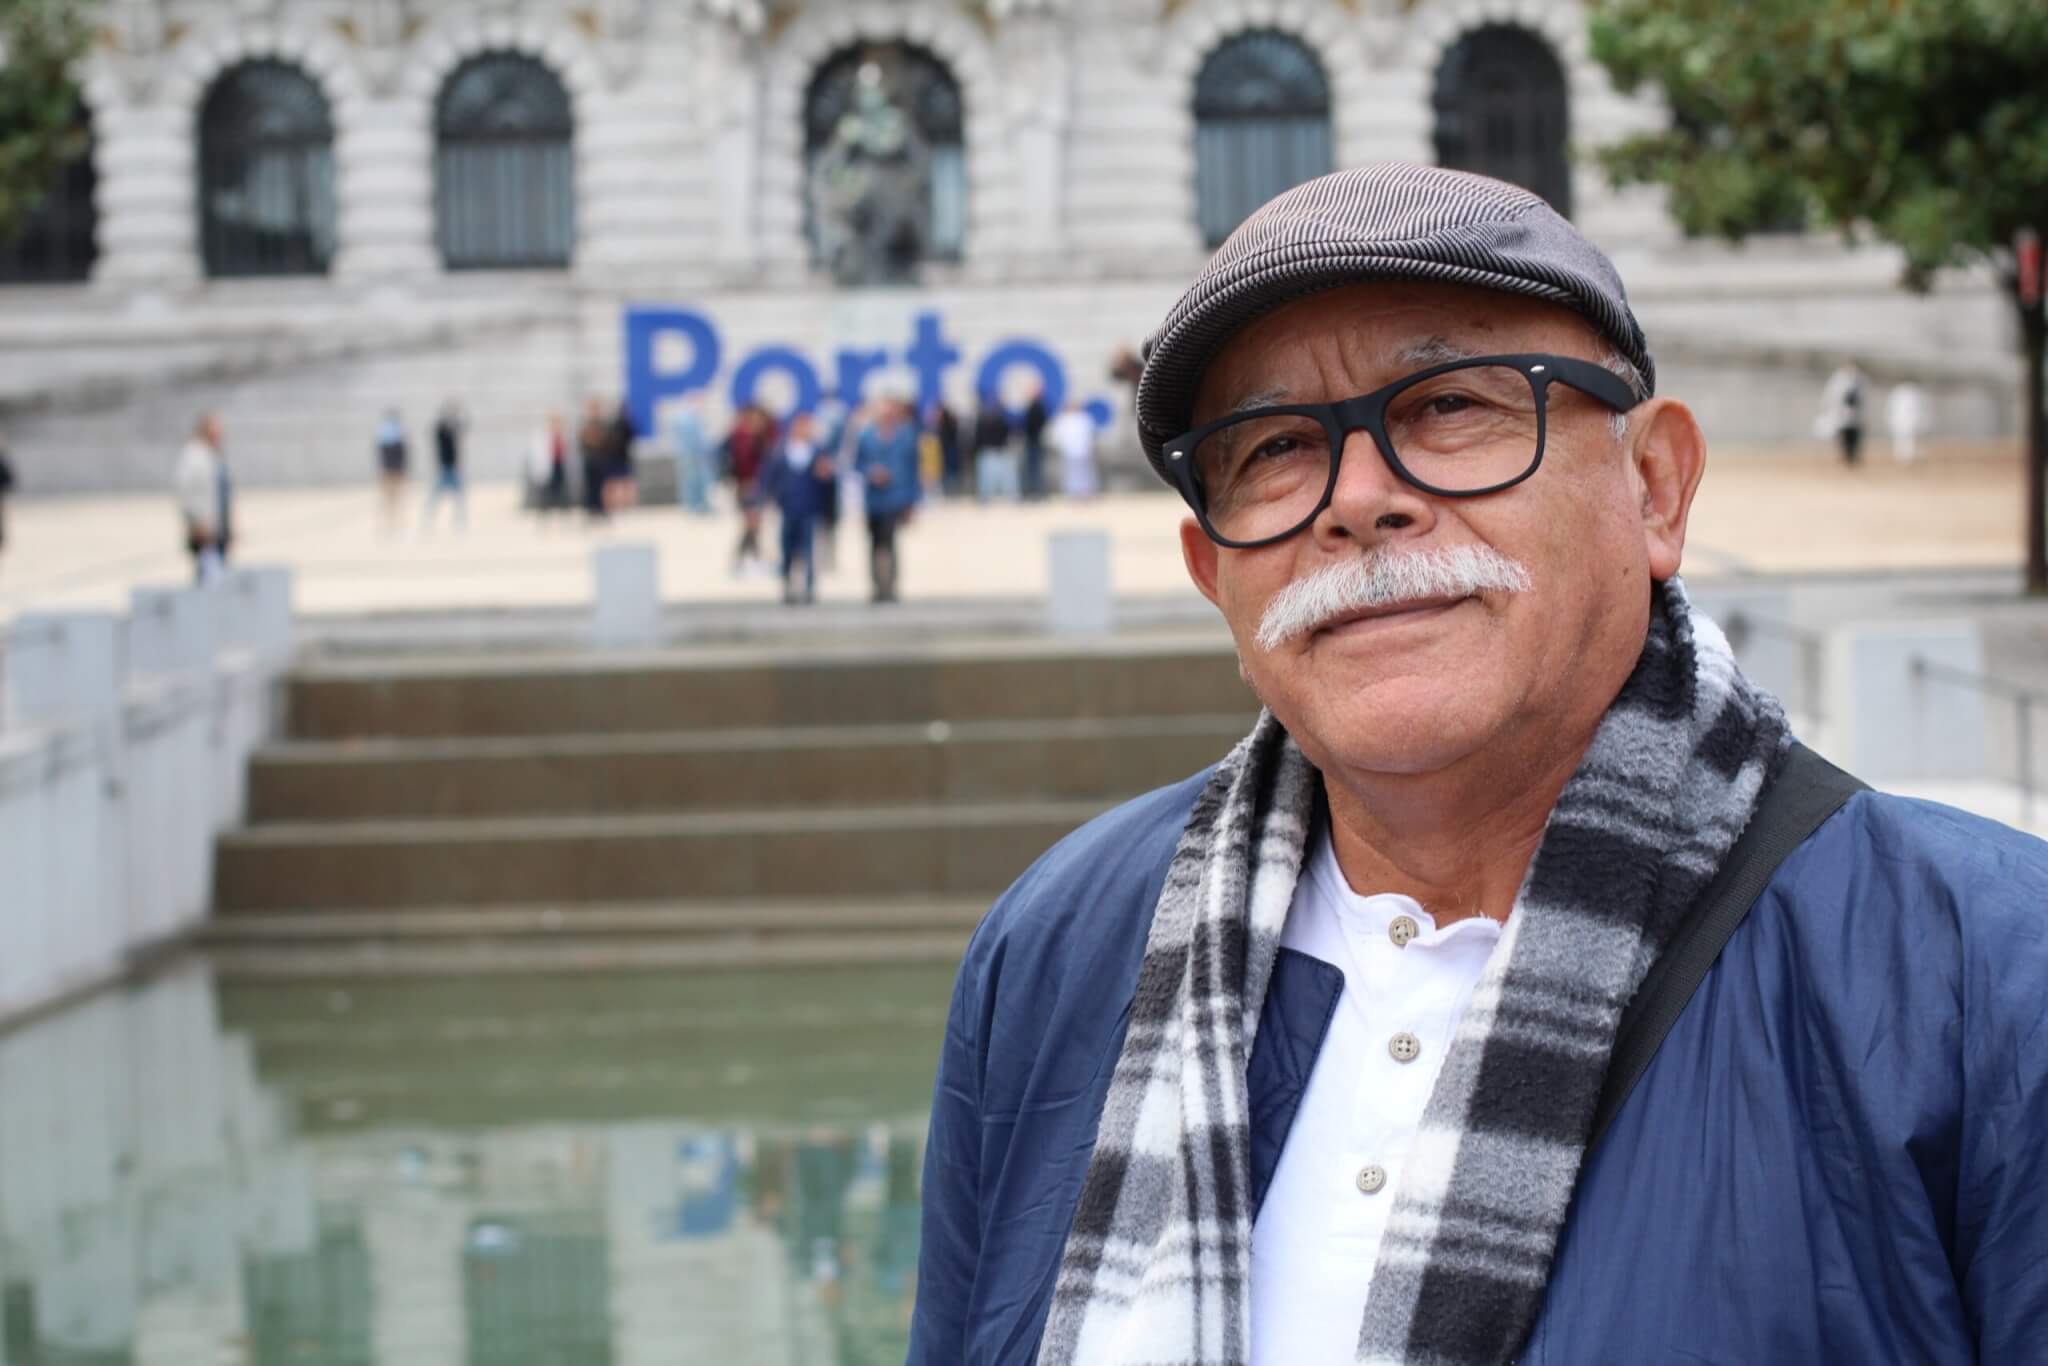 Portuguese senior man in Porto,Portugal